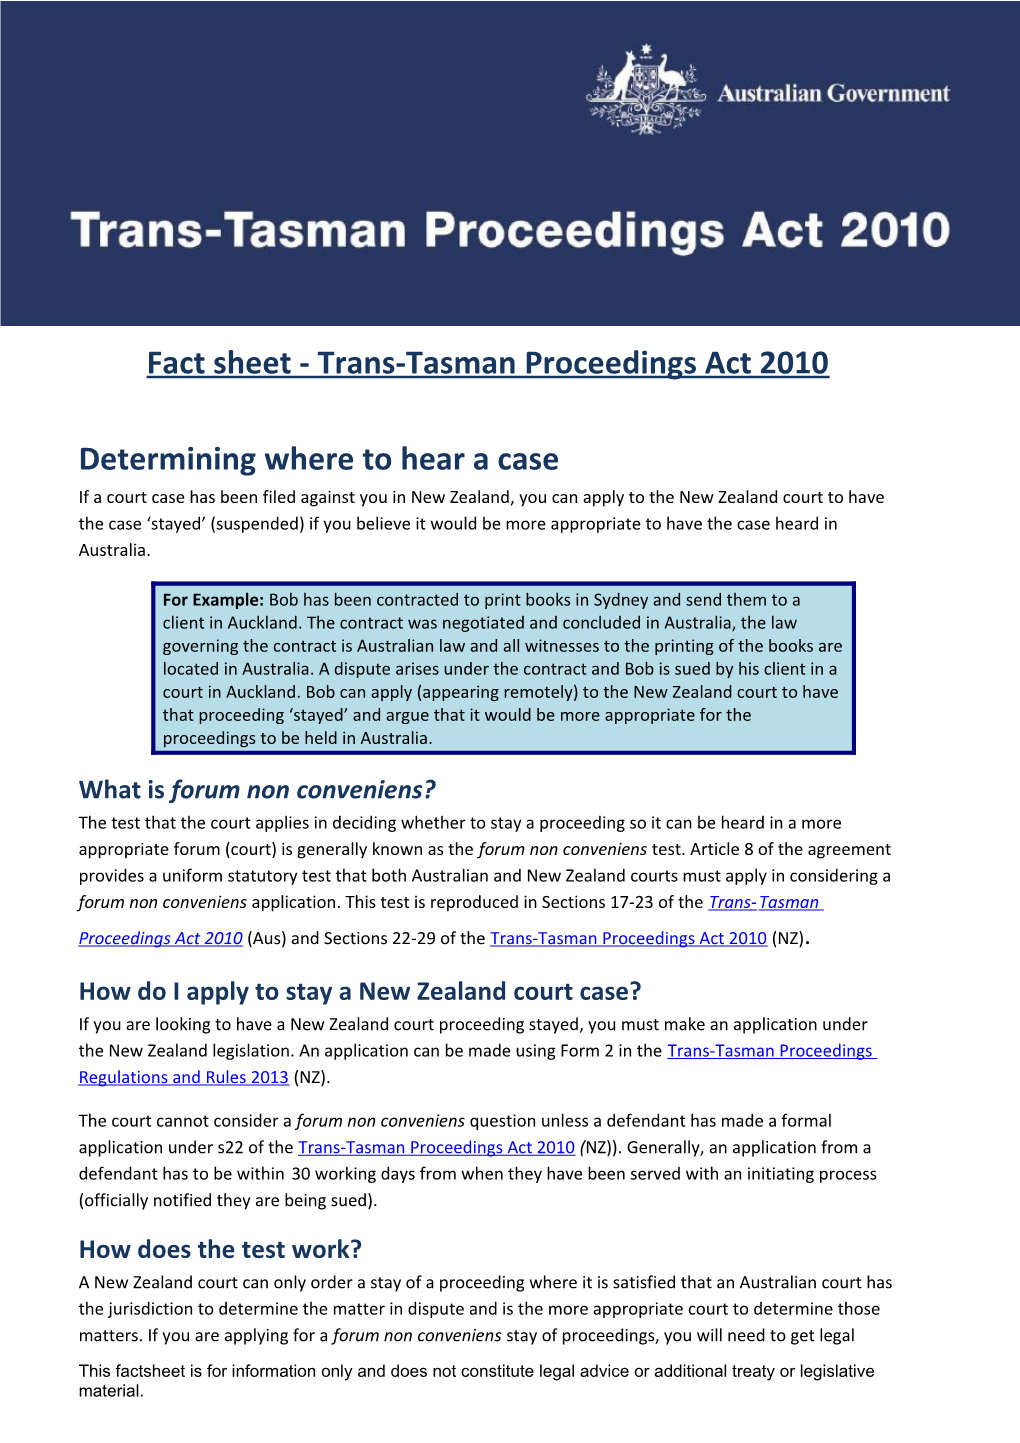 Fact Sheet - Trans-Tasman Proceedings Act 2010